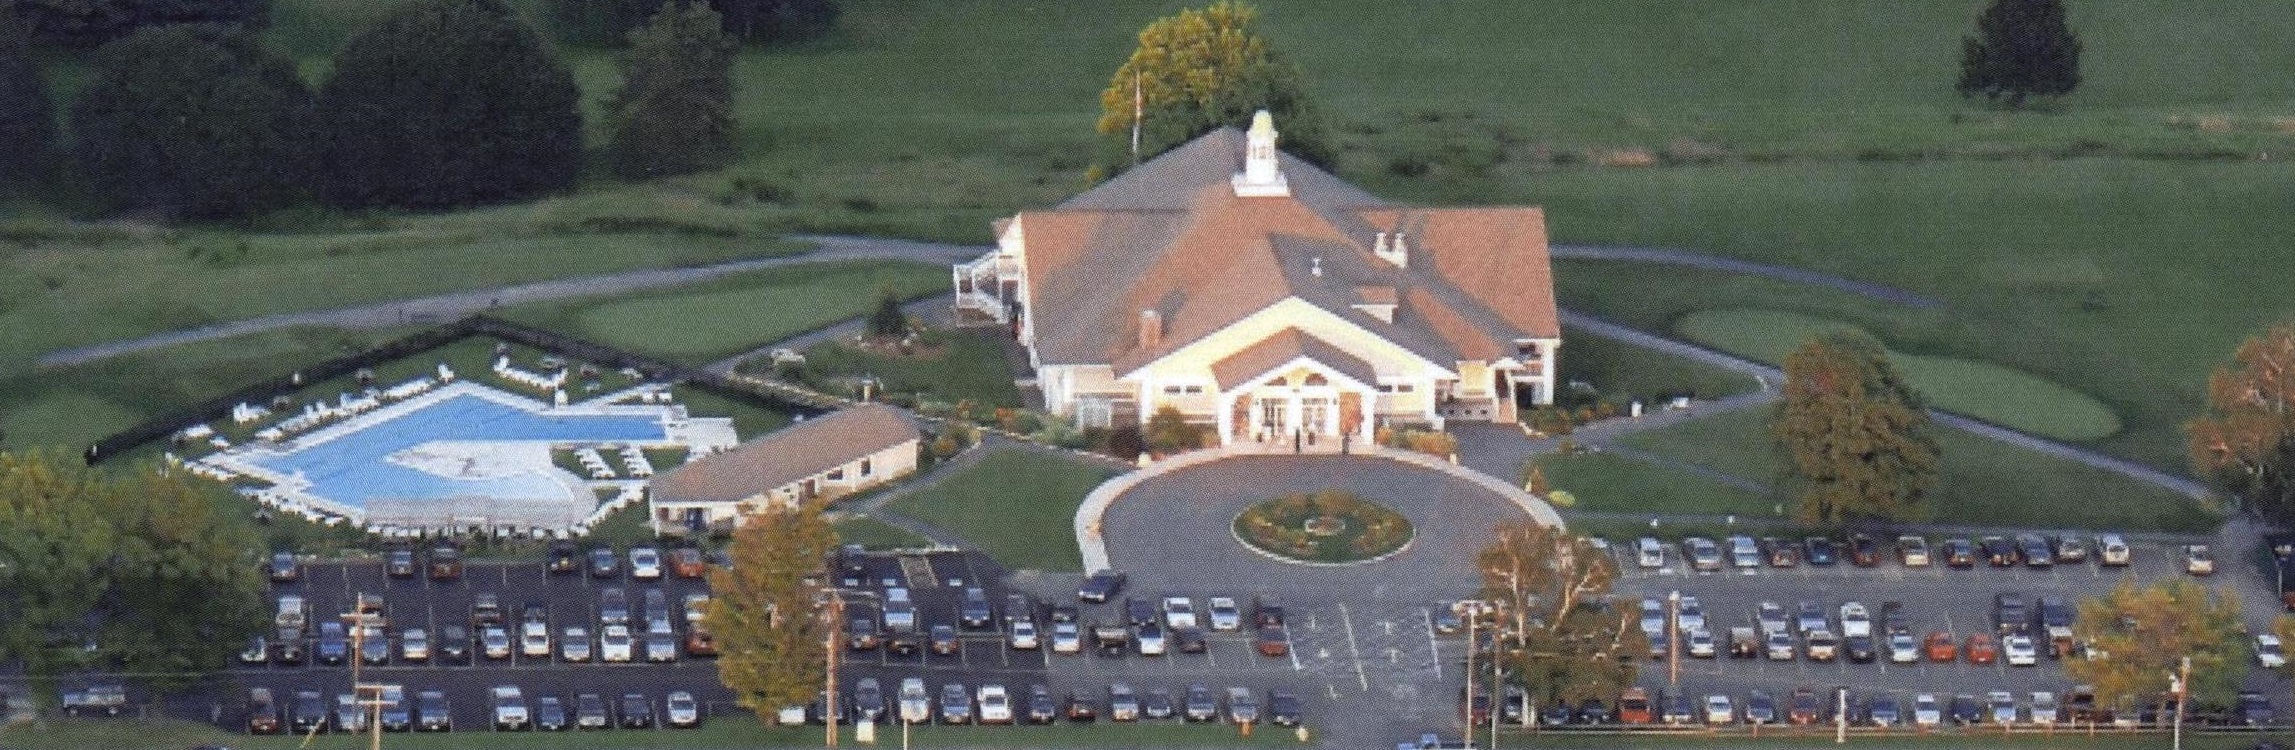  Berkshire Hills Country Club, Pittsfield, Massachusetts 